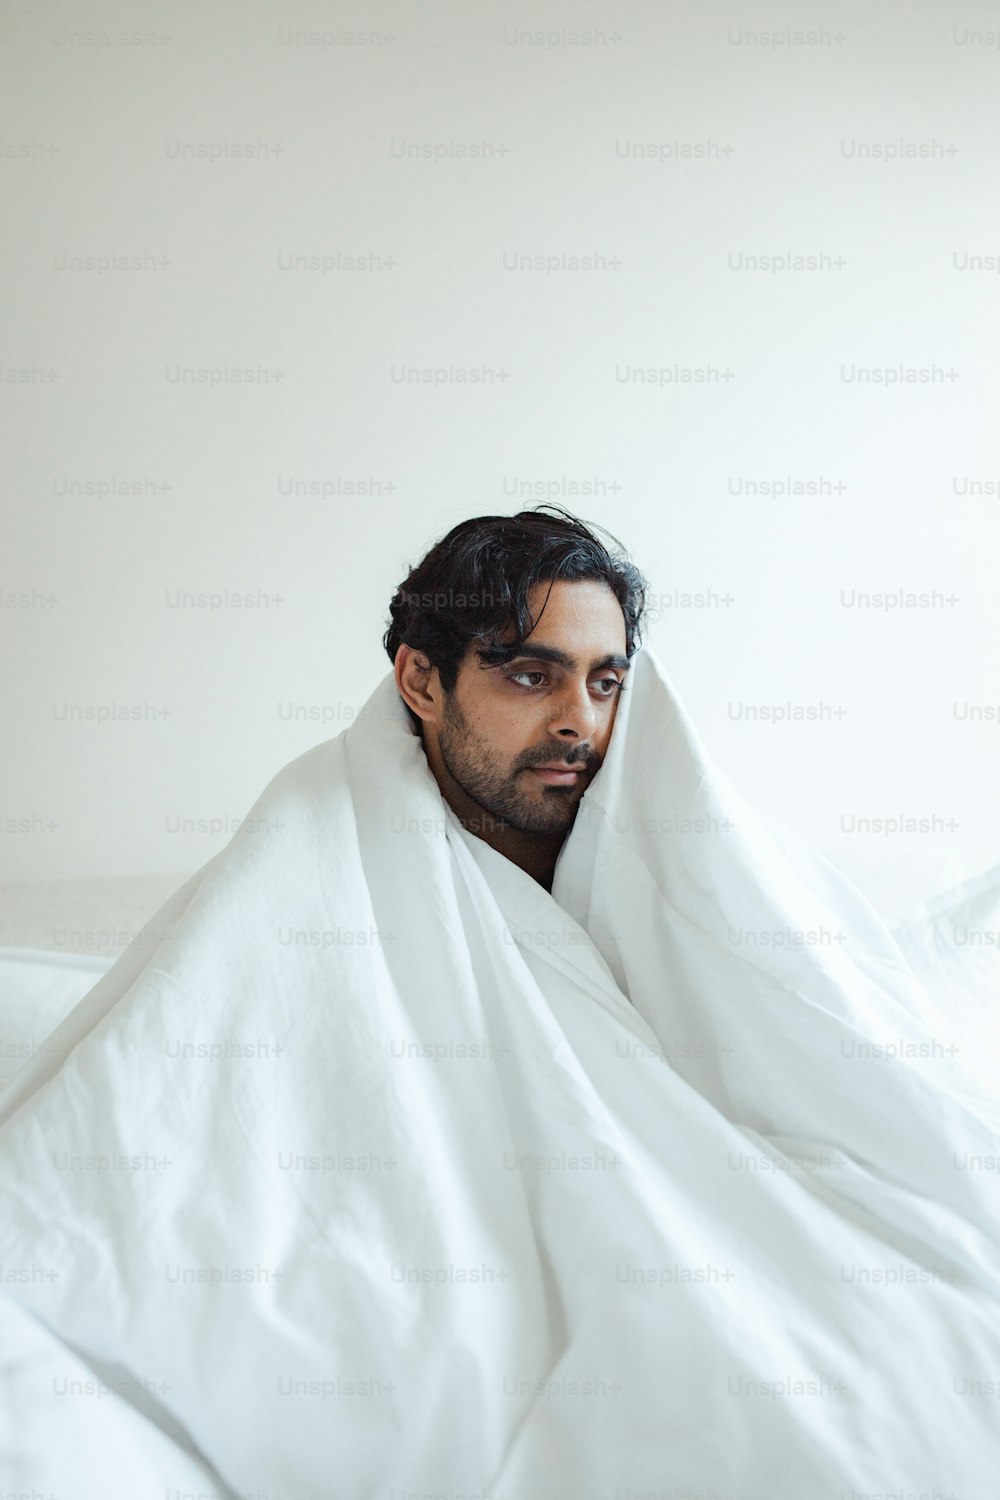 um homem enrolado em um cobertor em cima de uma cama